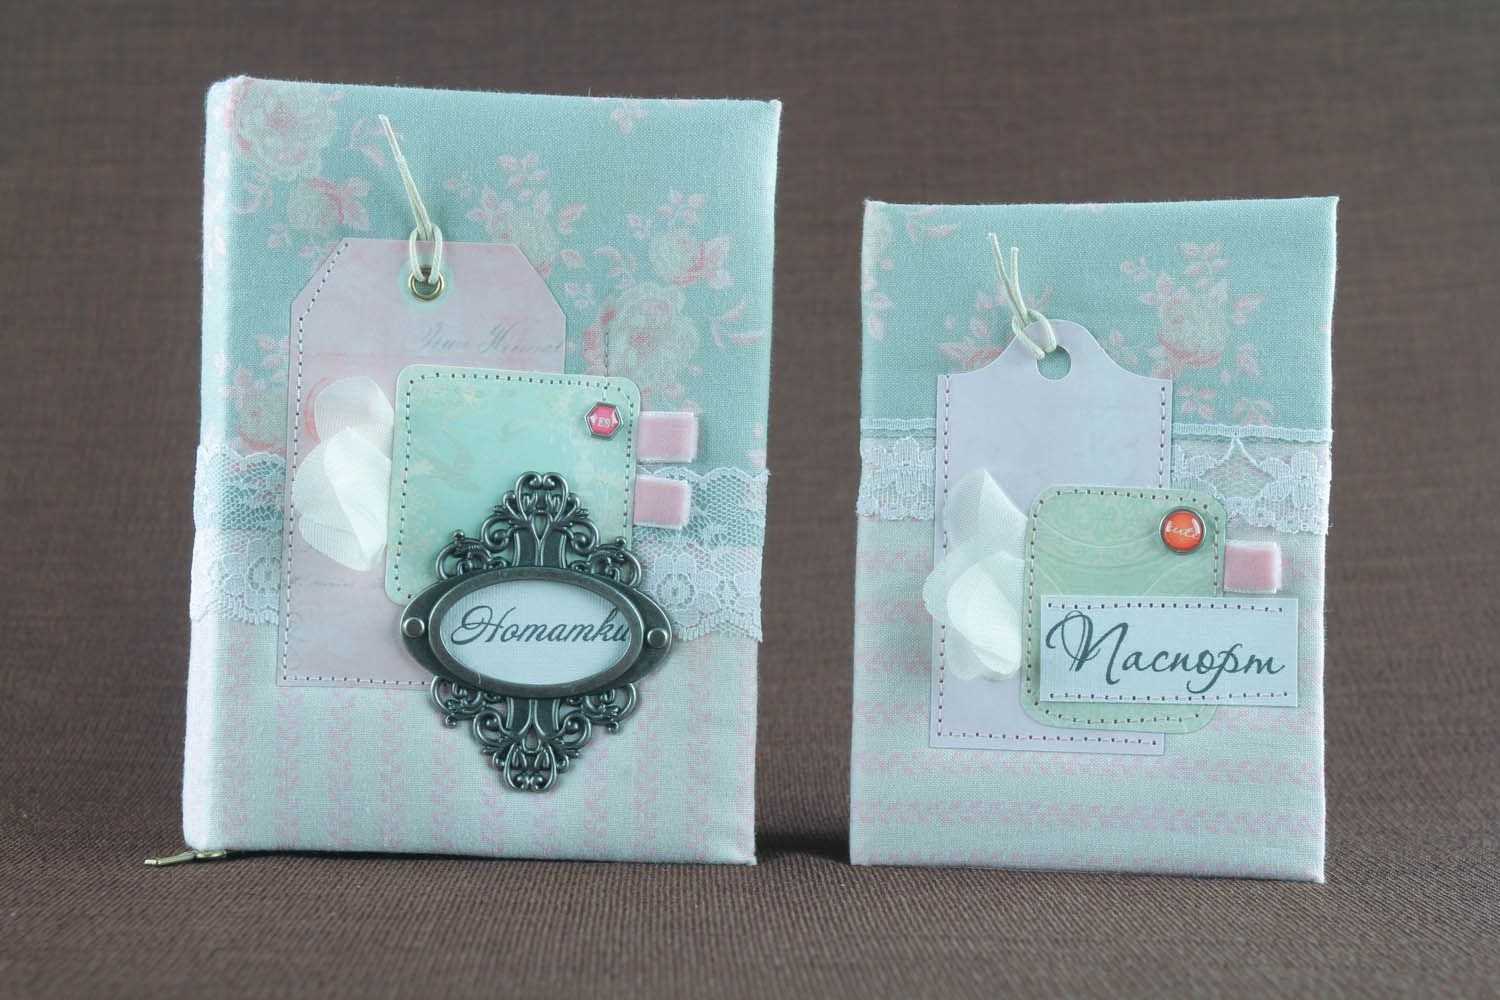 Bloco de notas e capa para passaporte feito à mão de tecido com cheiro  decorado com elementos decorativos  foto 2